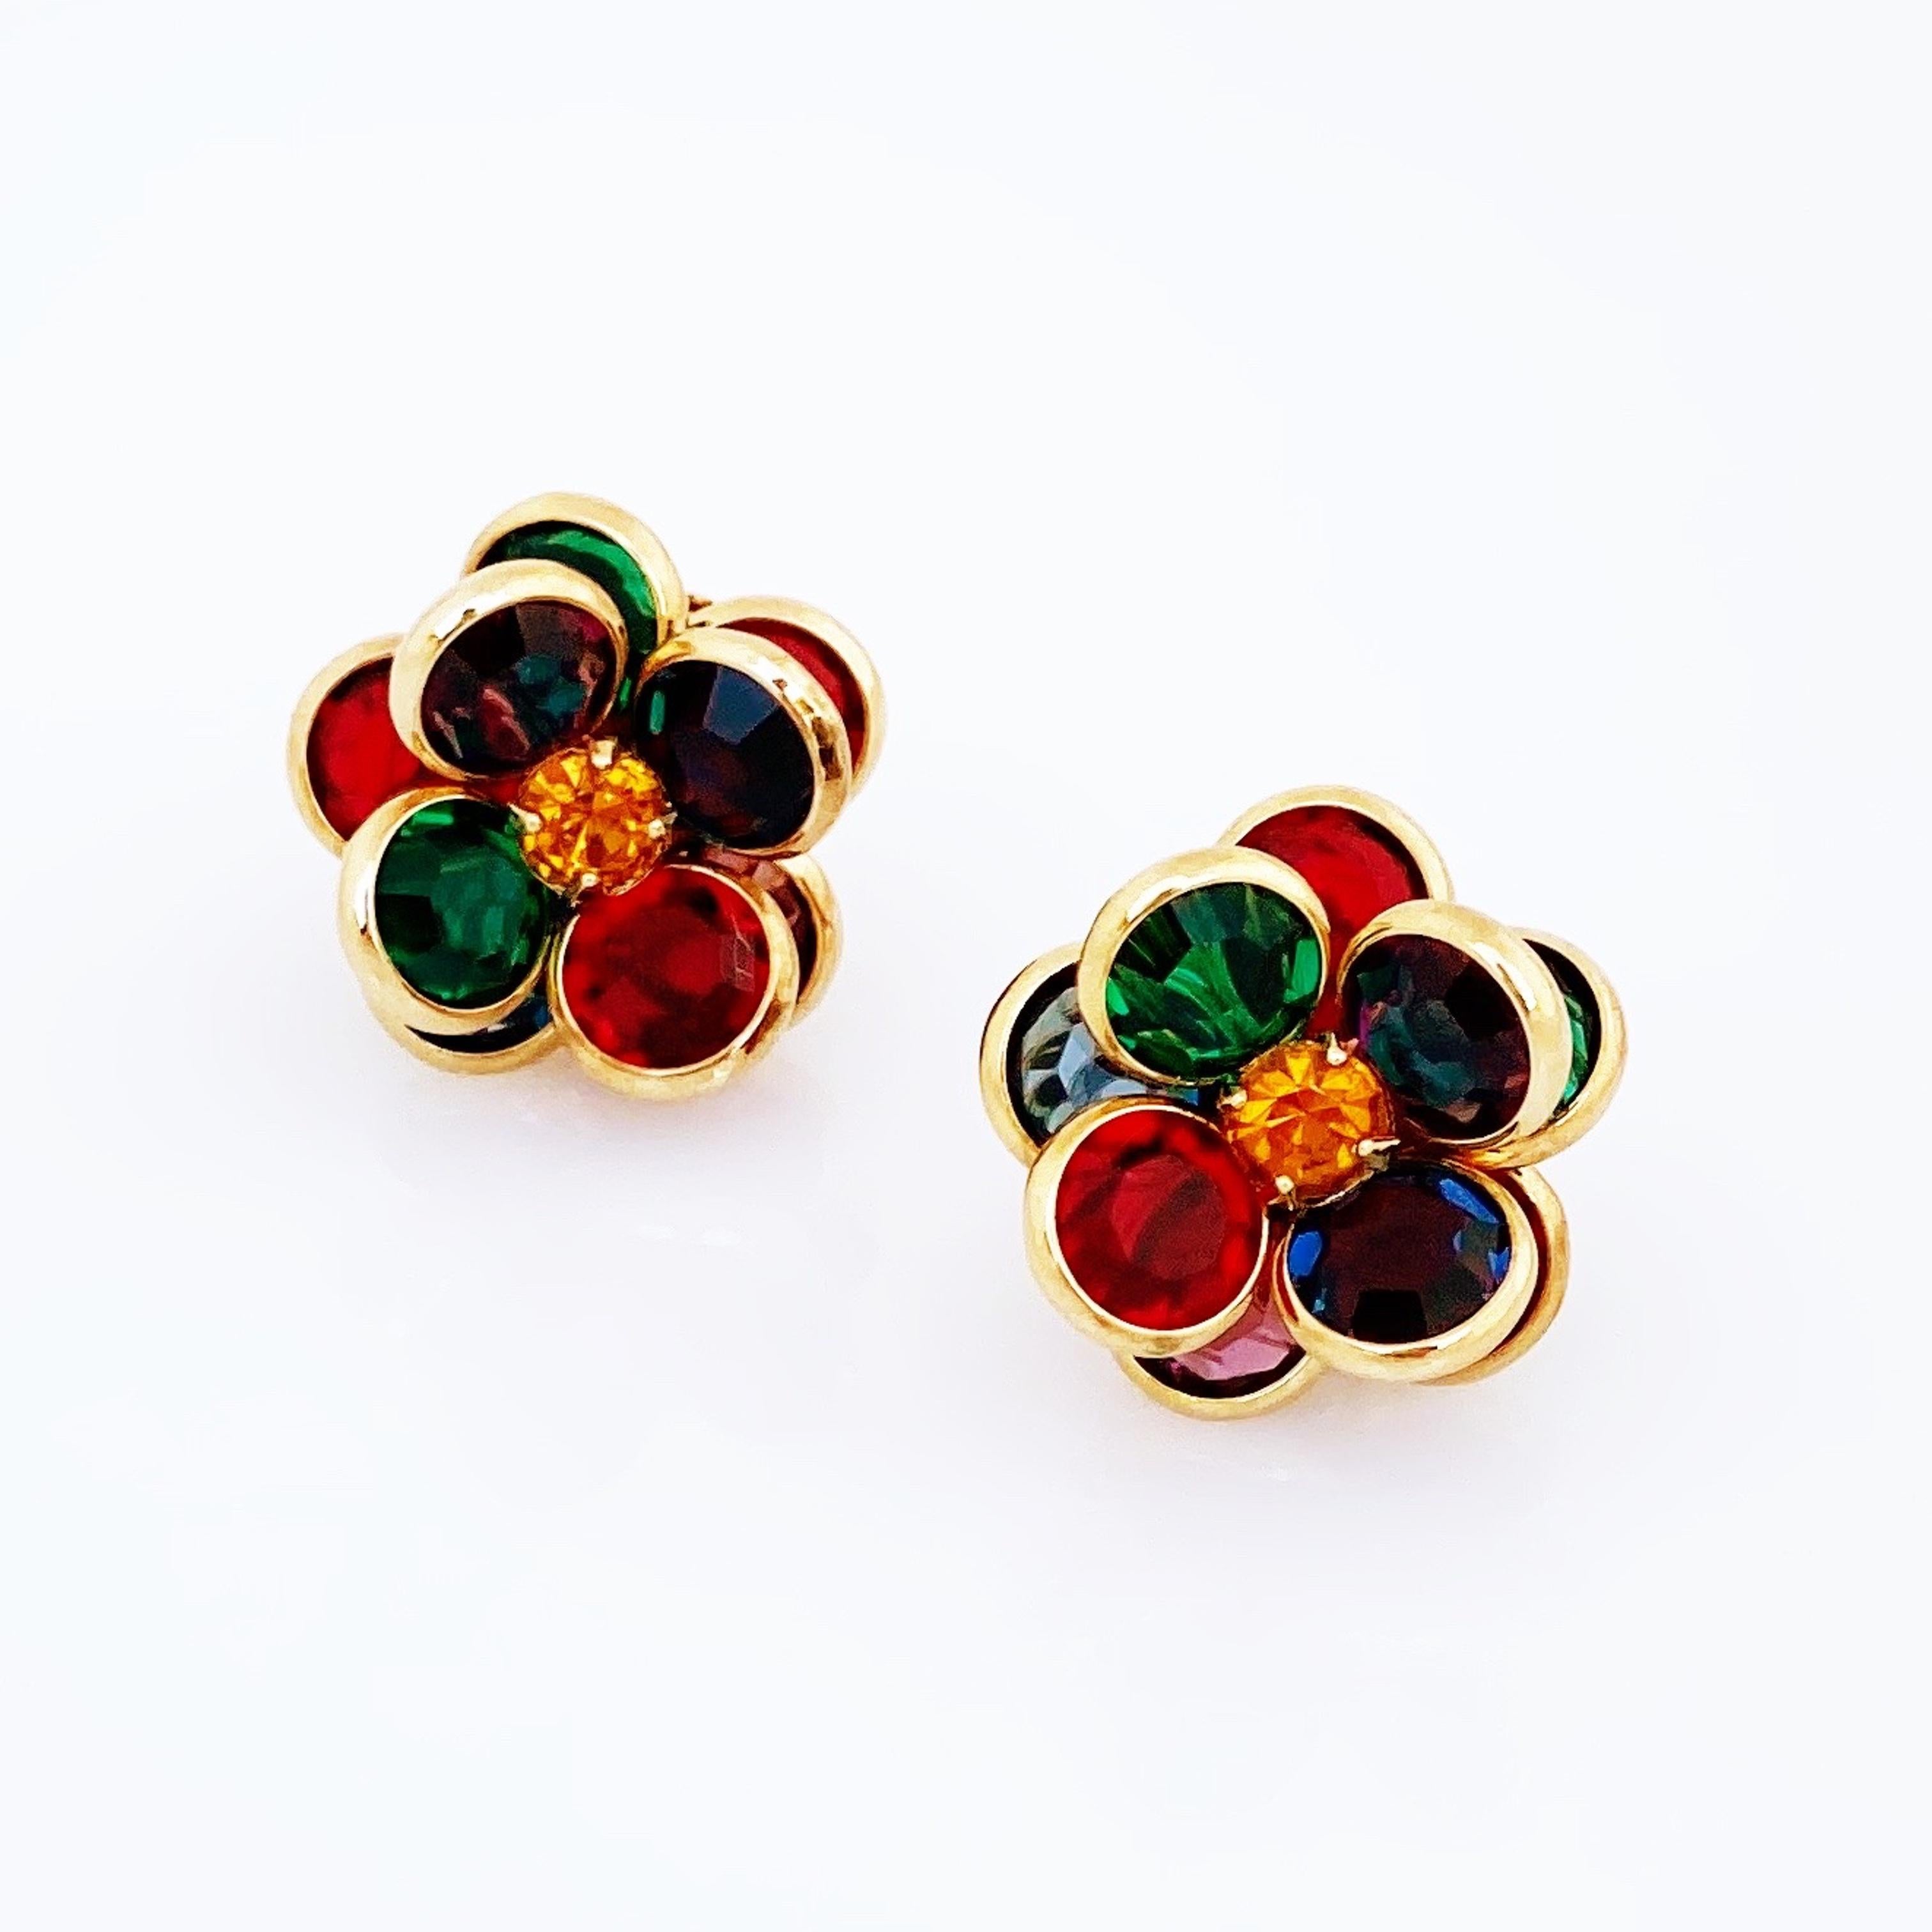 jewel tone earrings